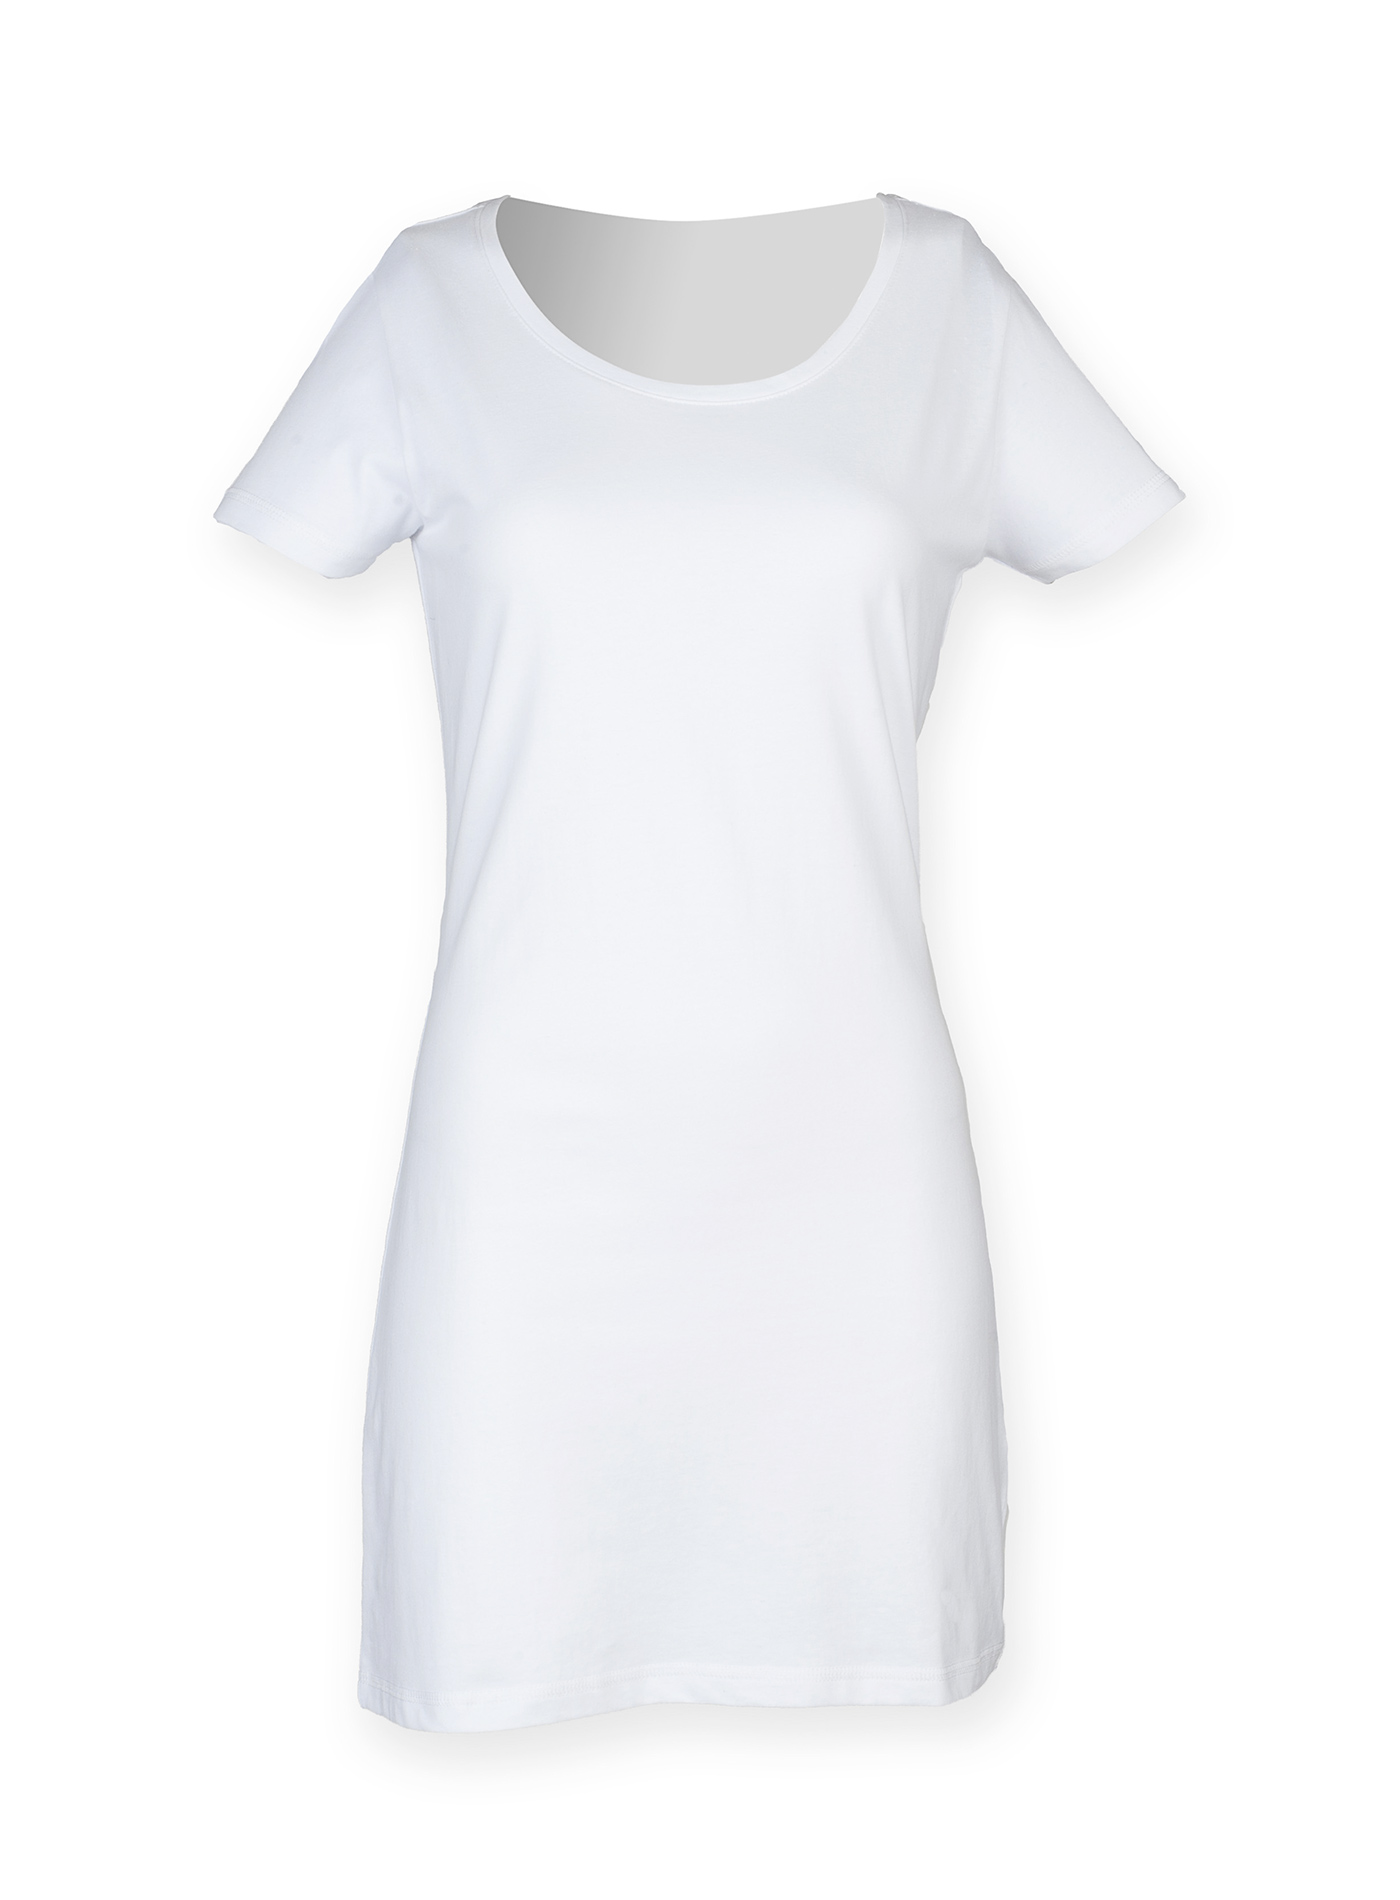 Dámské tričkové šaty - Bílá L